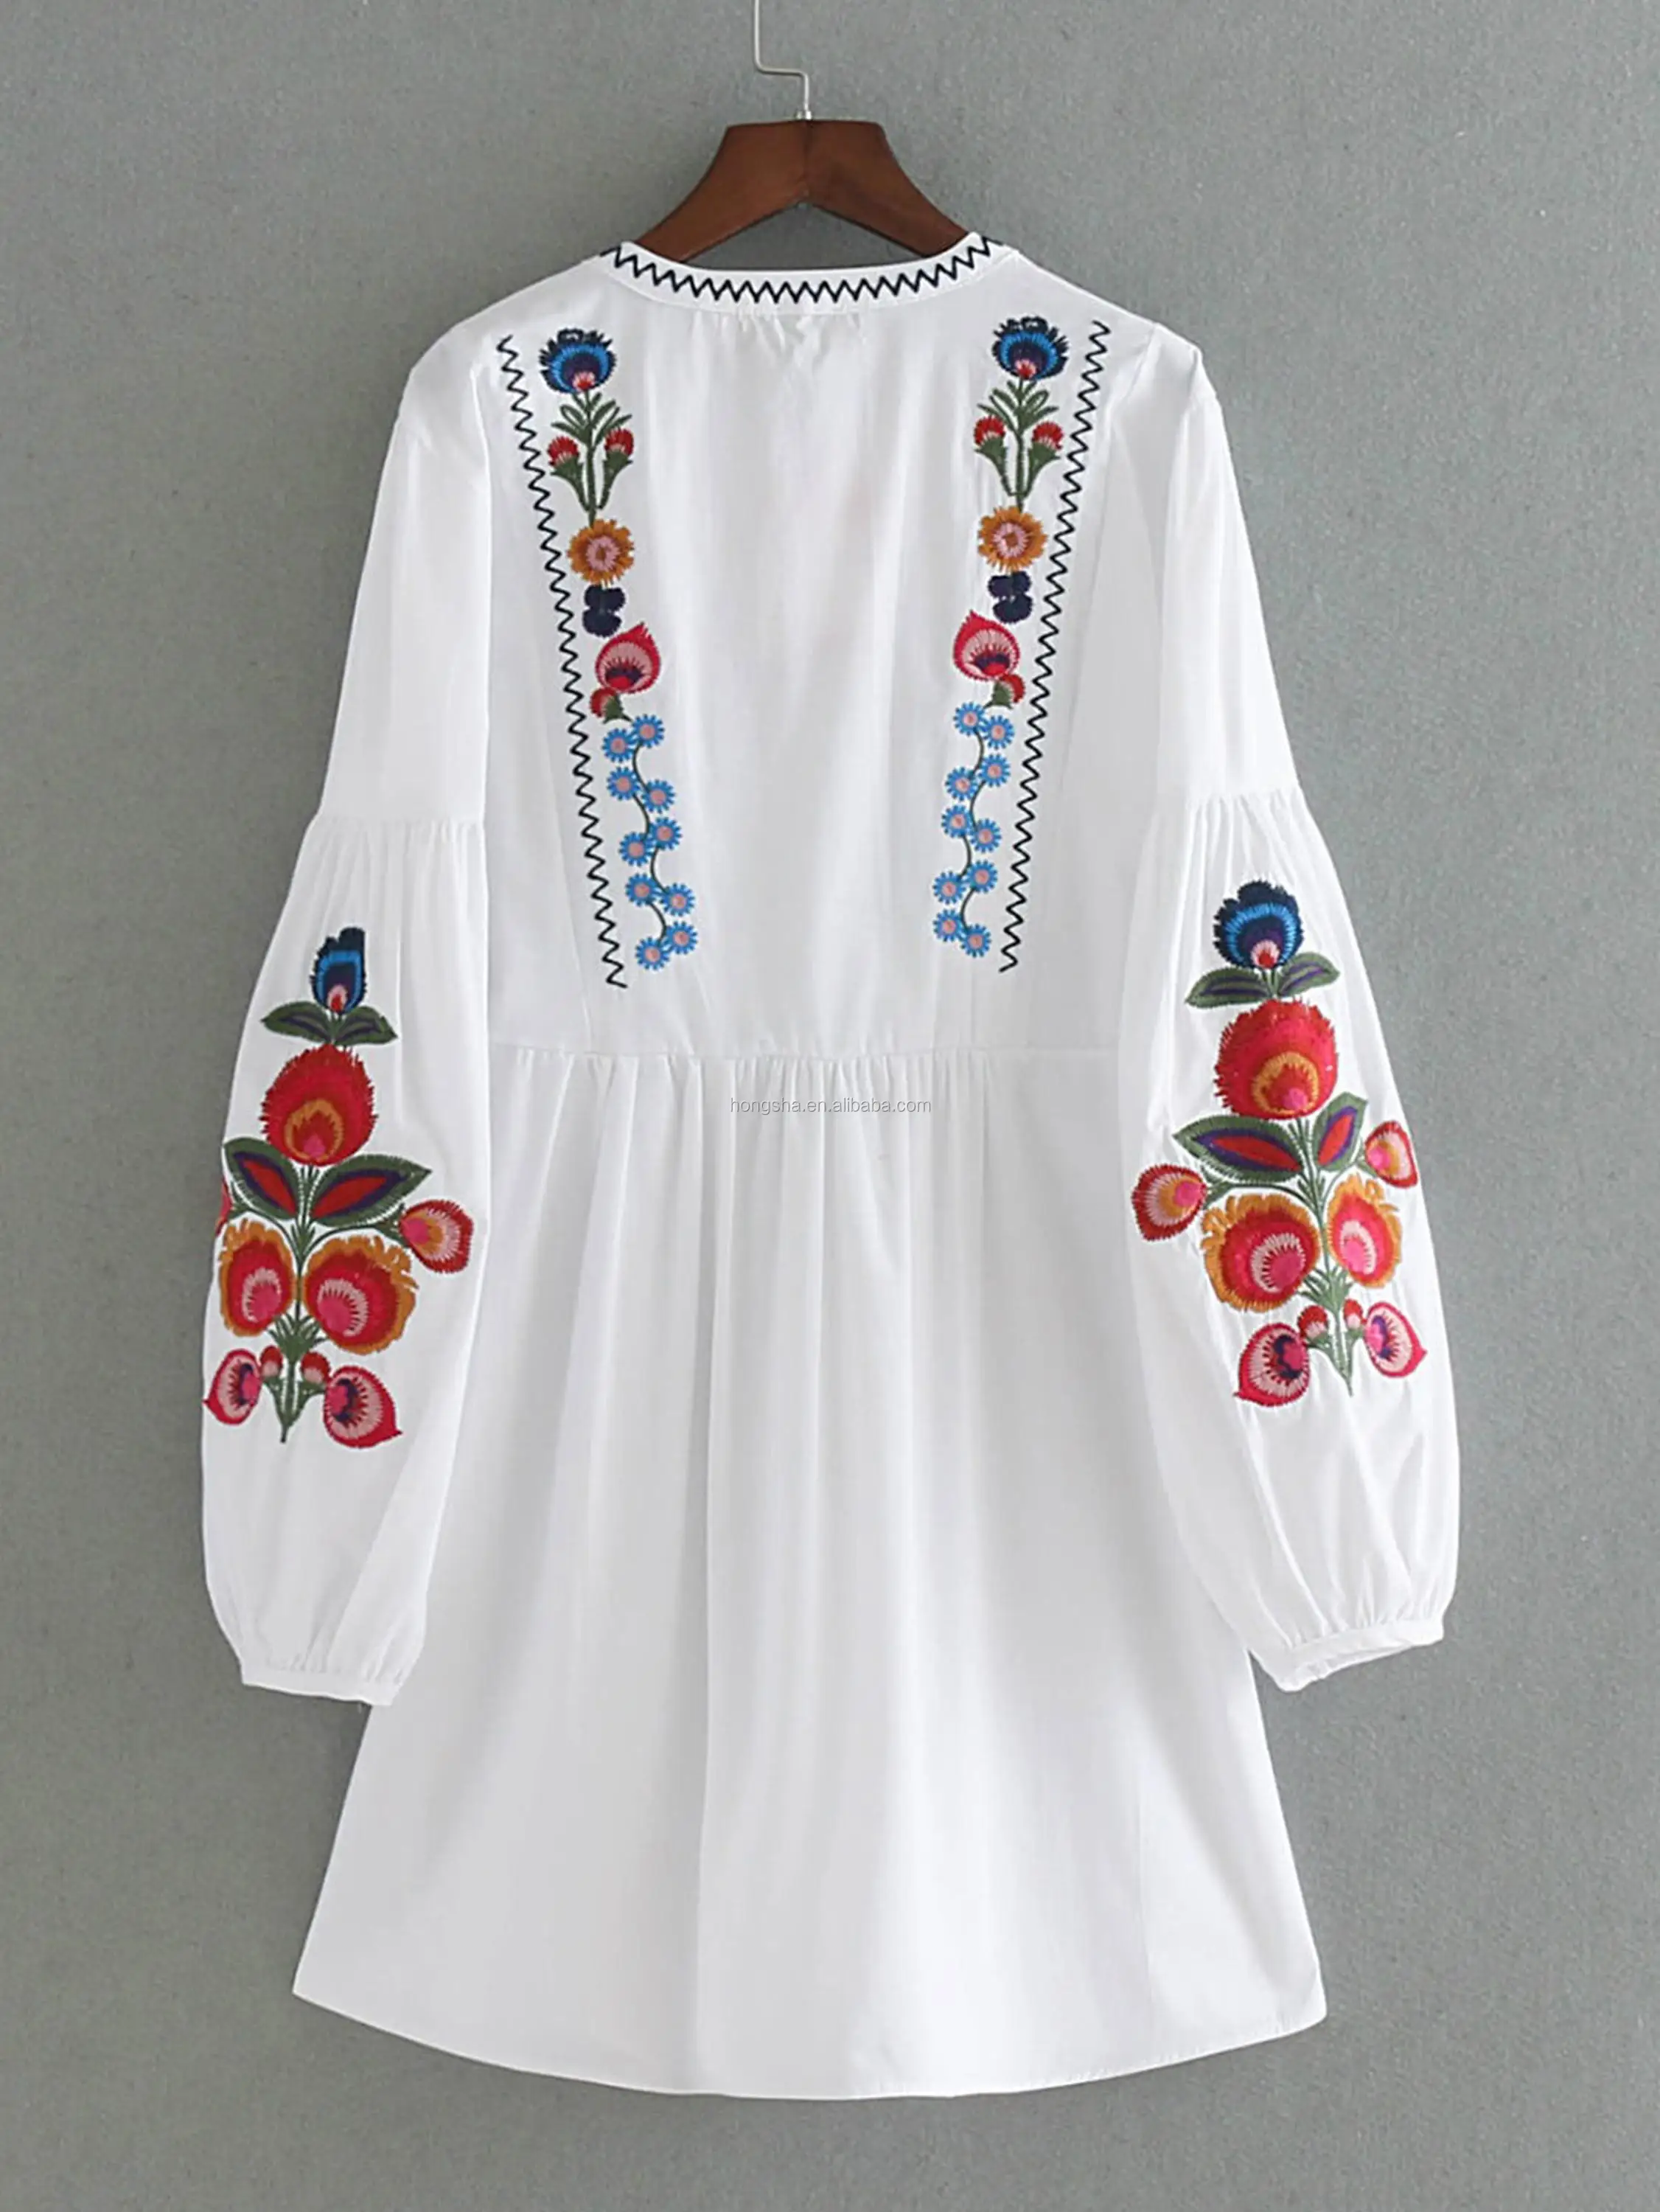 女性用ドレスhsd51ボヘミアンファッションの服アリババ卸売製品 Buy ボヘミアン服 服 女性のための Product On Alibaba Com